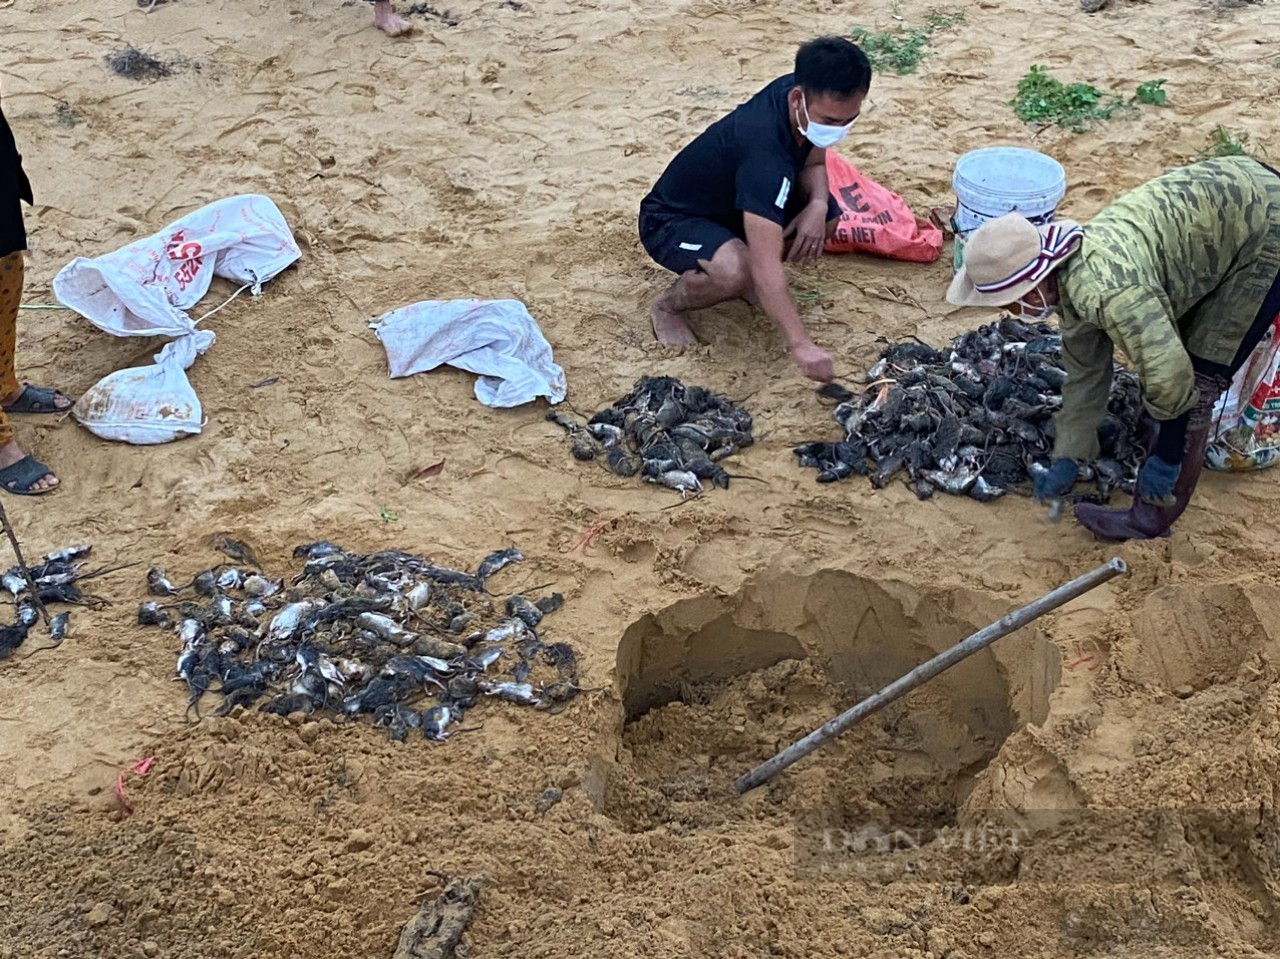 Tranh thủ mùa mưa, nông dân Hà Tĩnh ra quân diệt chuột bảo vệ mùa màng lại bán được giá cao - Ảnh 5.